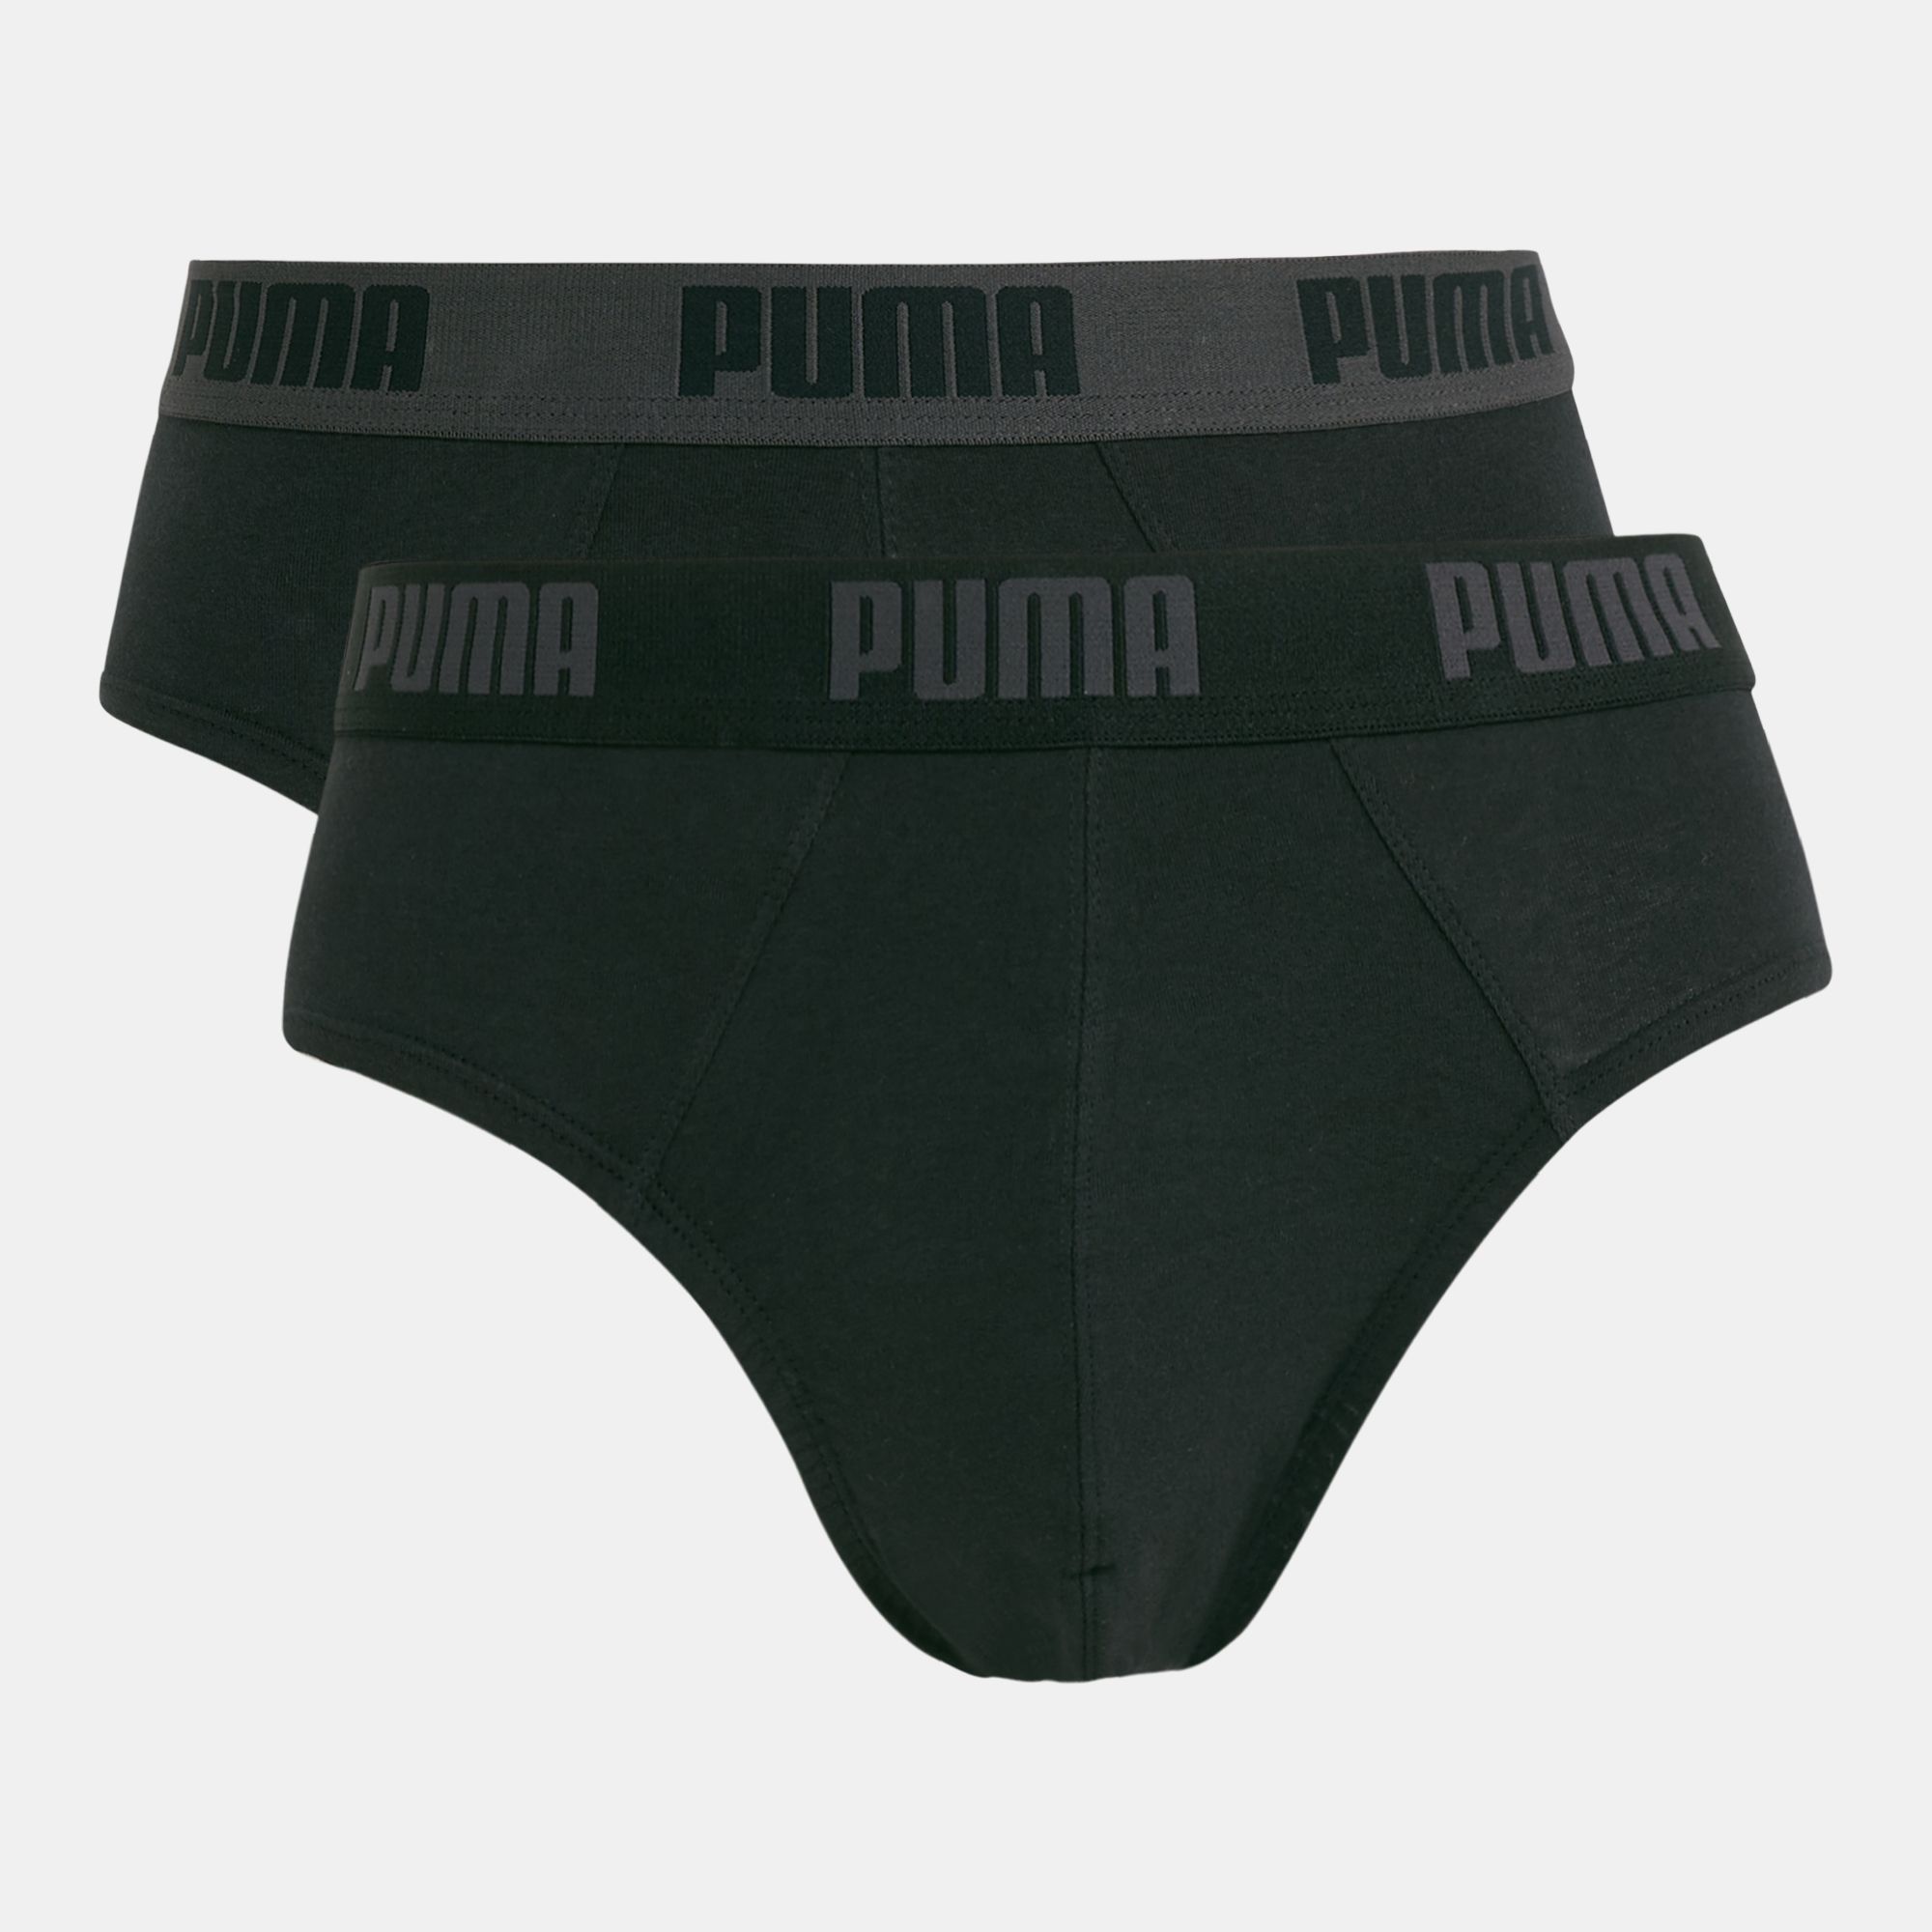 puma briefs 5 pack